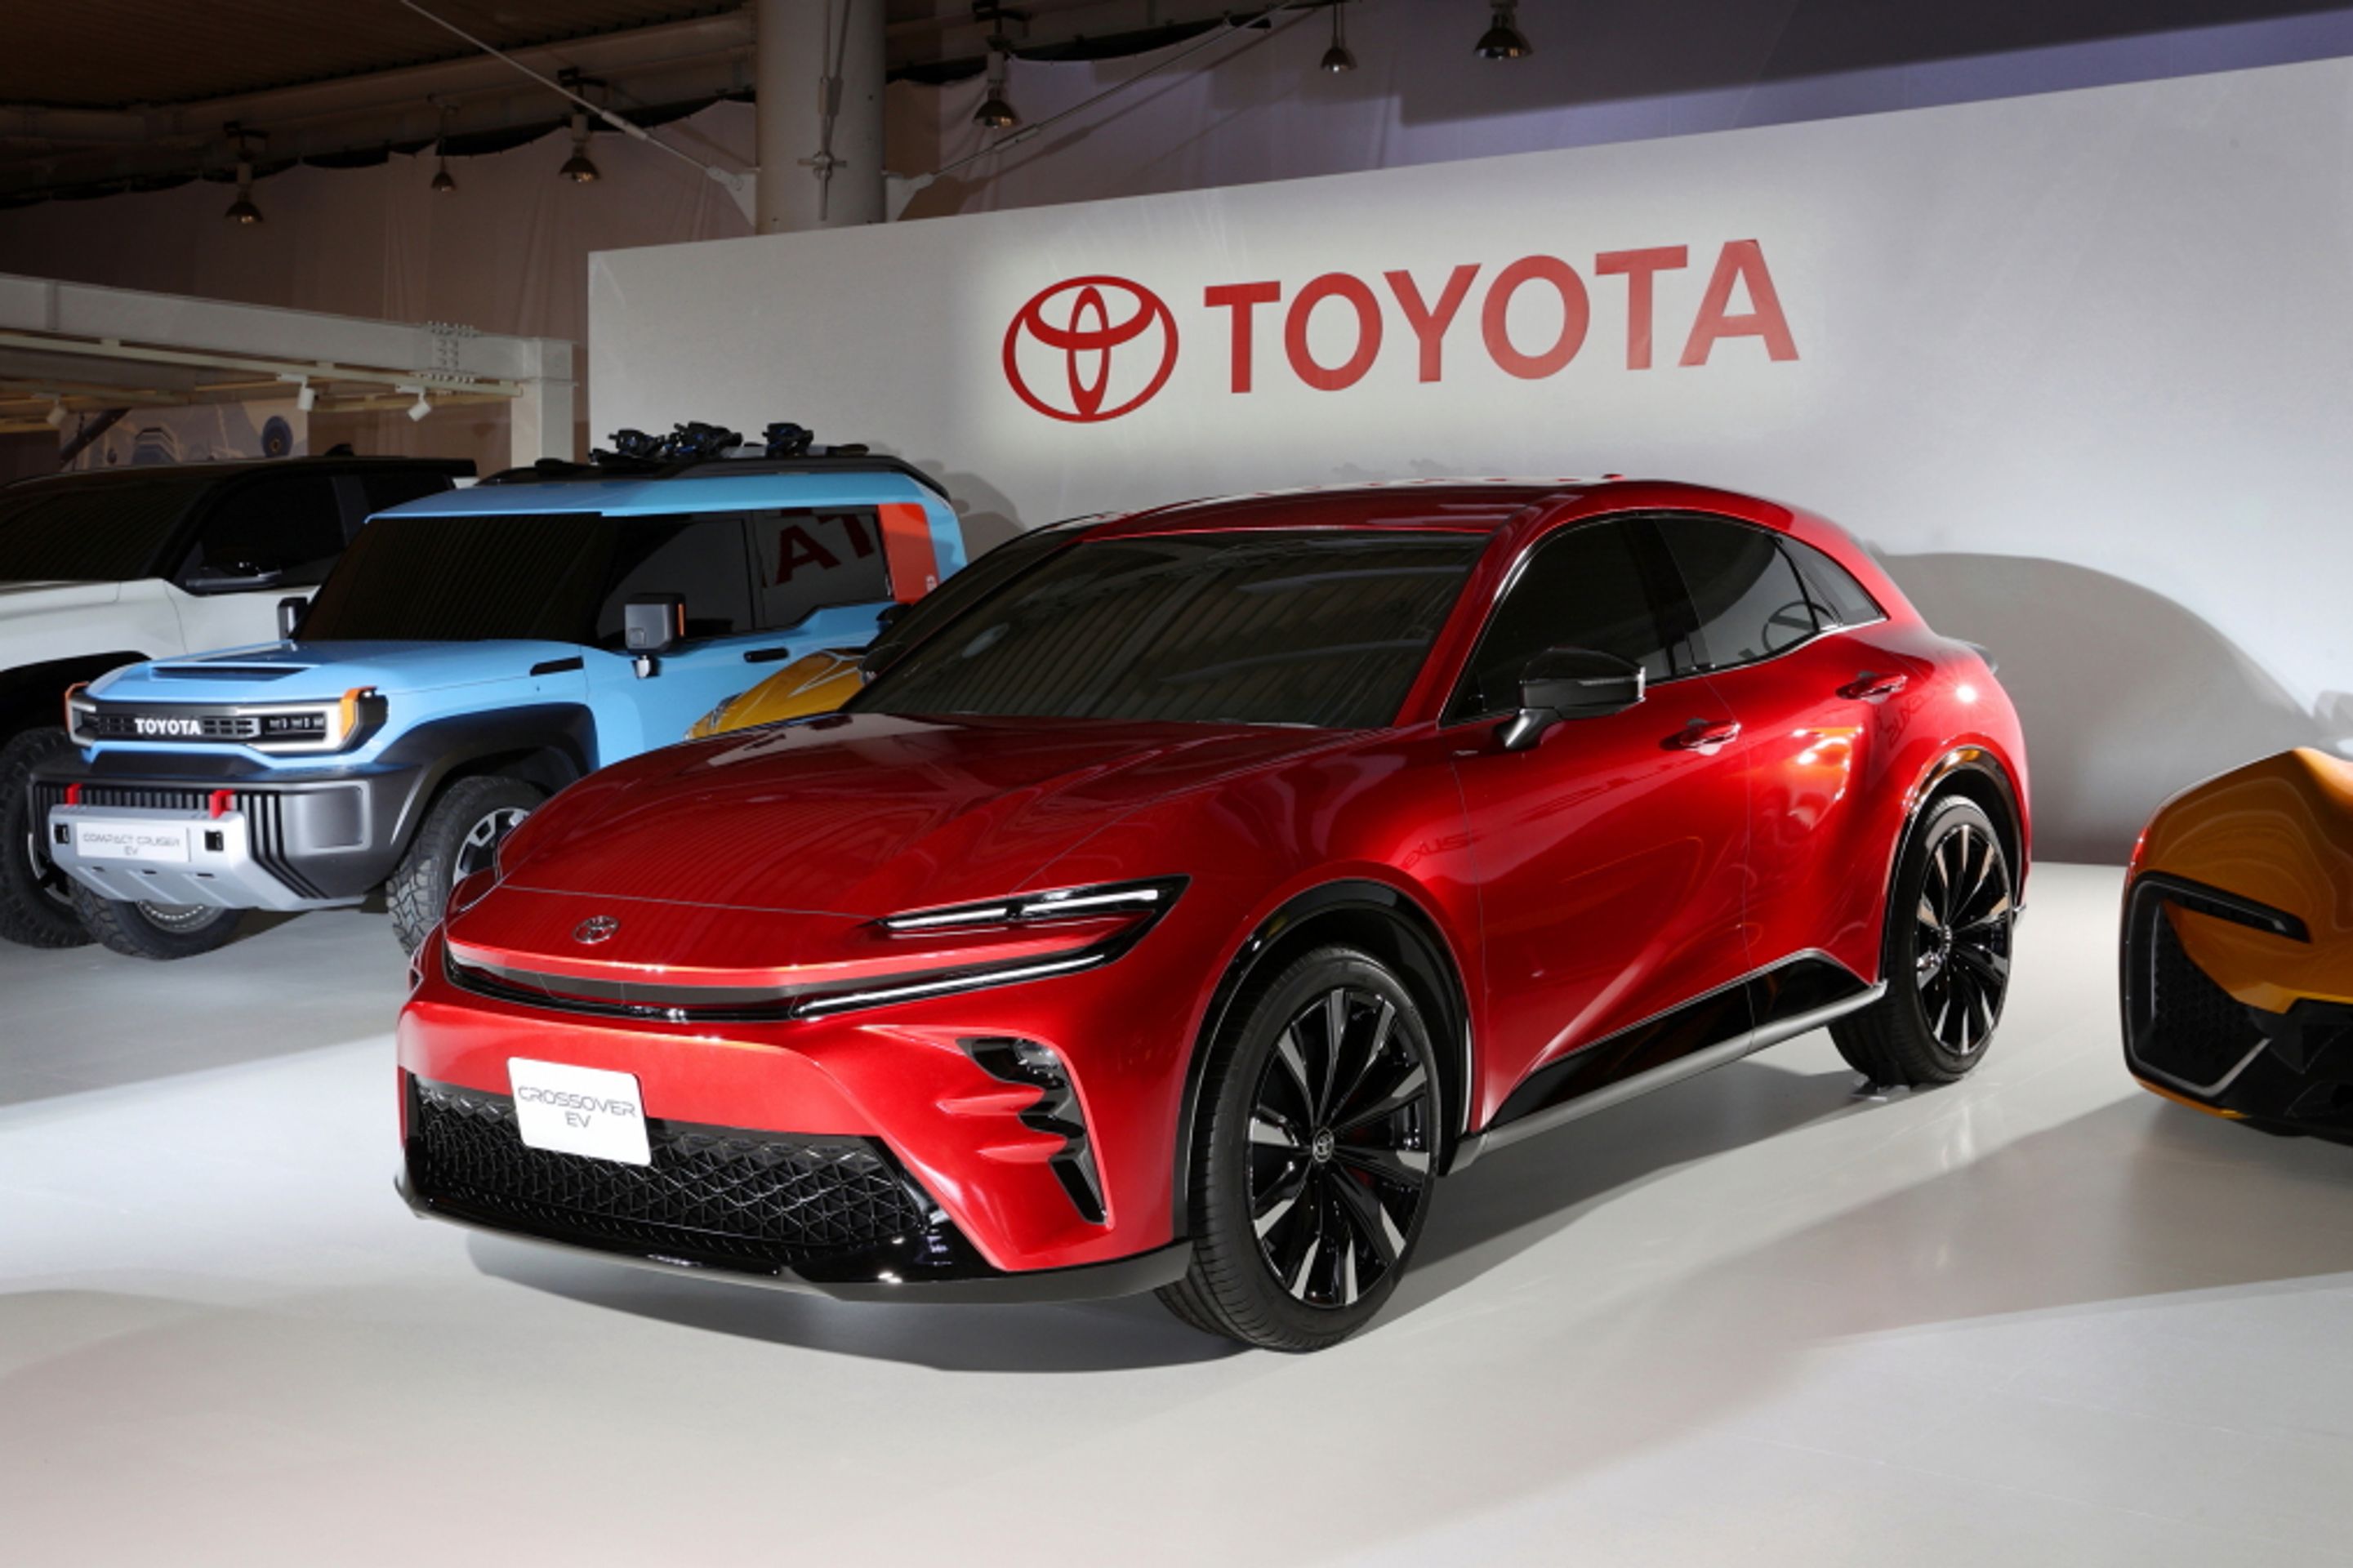 Toyota30 - Takhle vypadá bateriová budoucnost podle značek Toyota a Lexus (19/23)